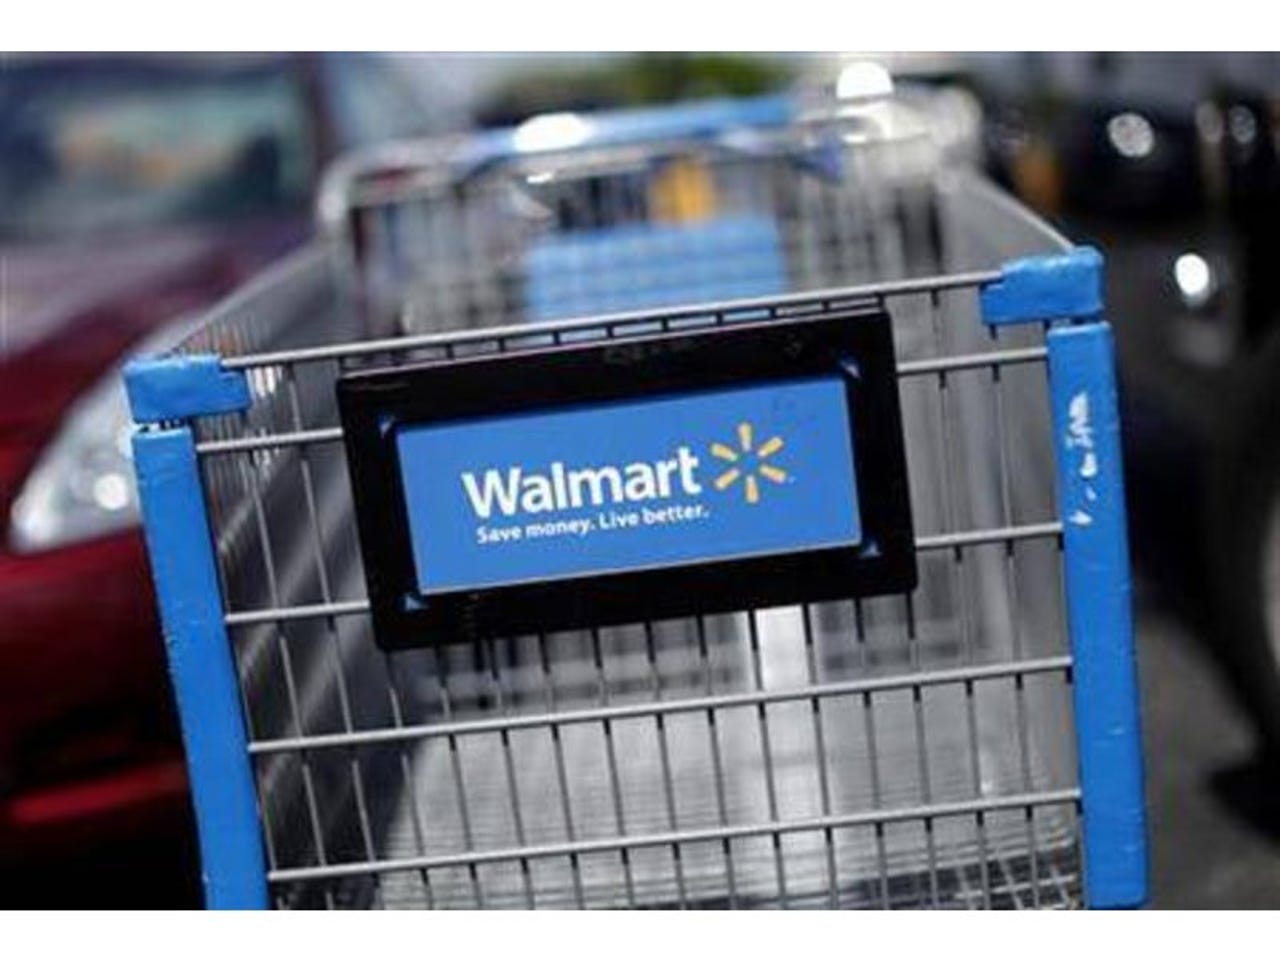 Wal-Mart Robotic Shopping Cart